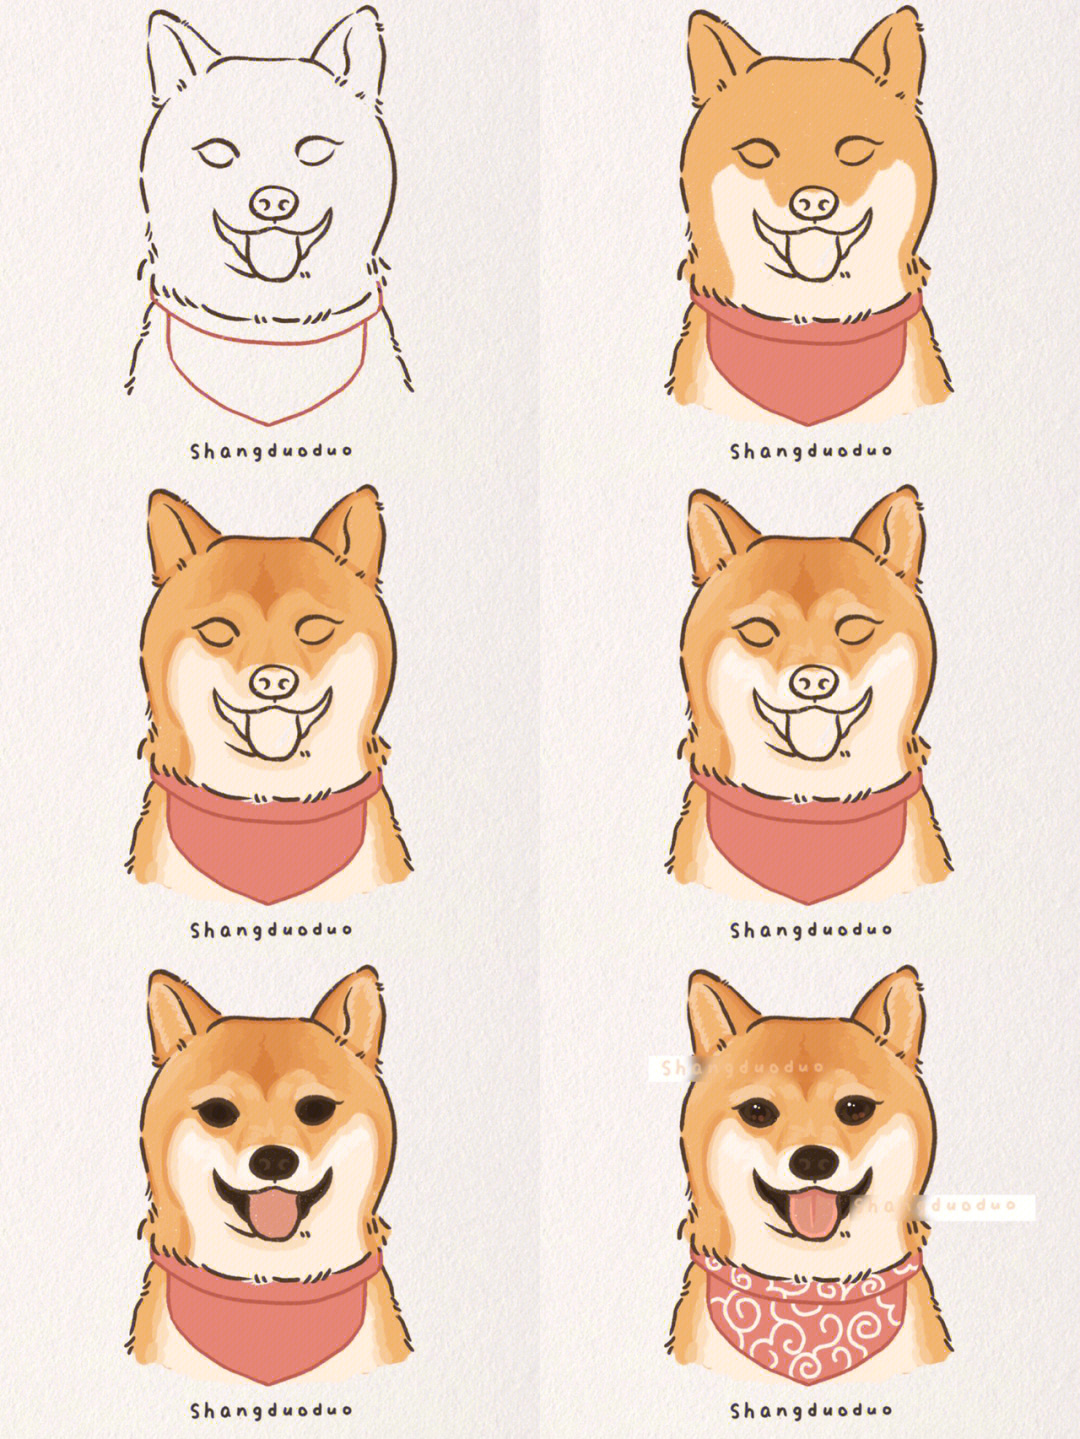 柴犬绘画教程图片